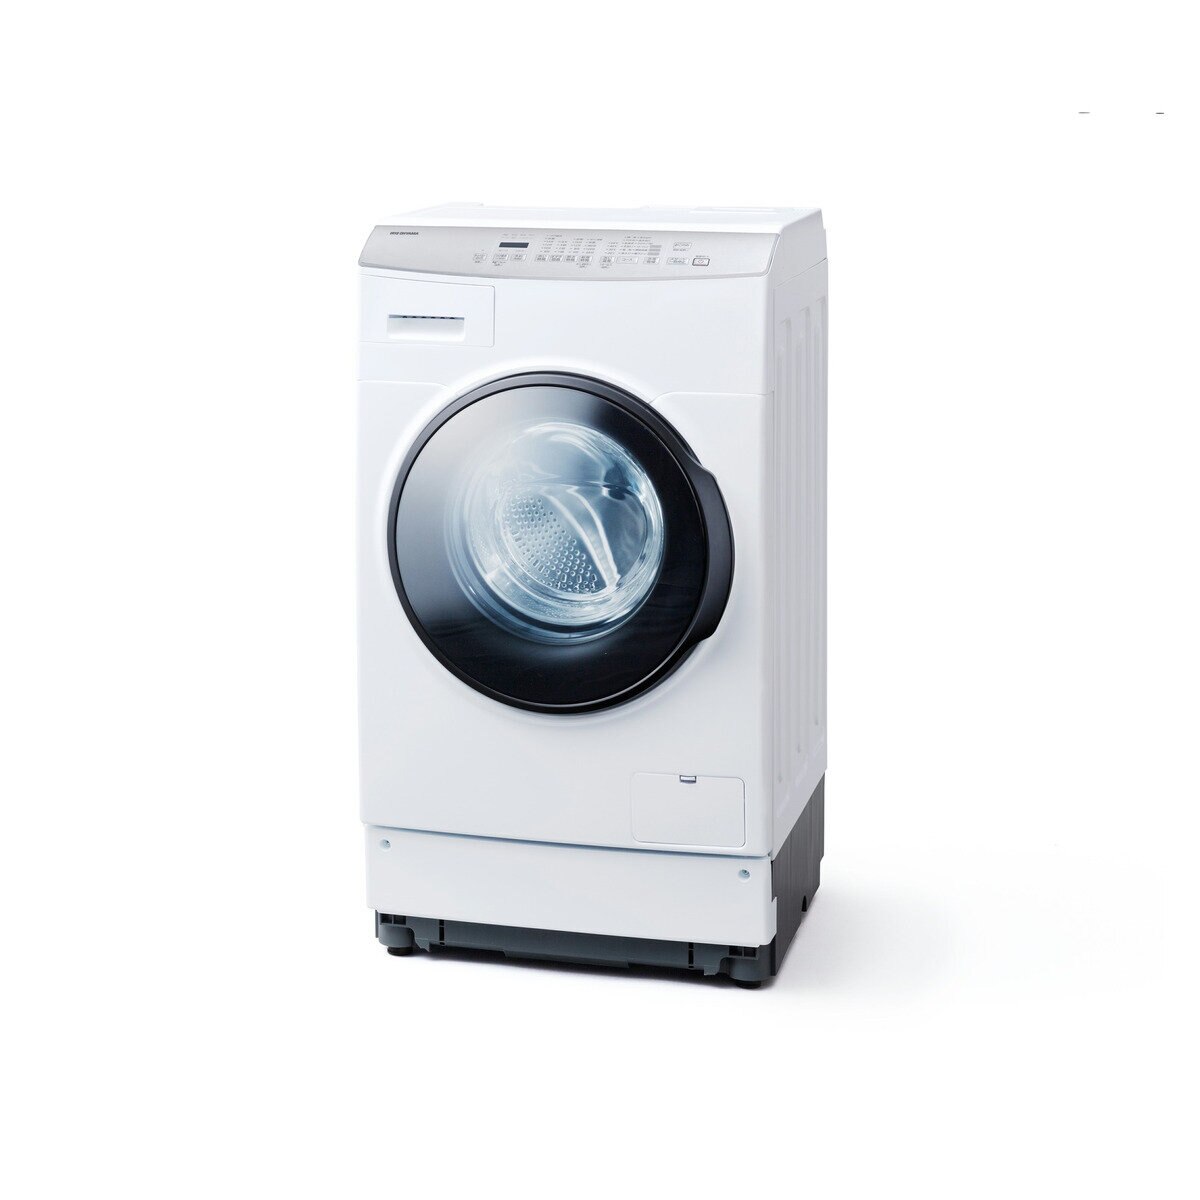 グランドセール 洗濯機 ドラム式 8kg 設置無料 アイリスオーヤマ ドラム式洗濯機 ドラム式洗濯機乾燥機 一人暮らし 新生活 FLK832 代引き不可